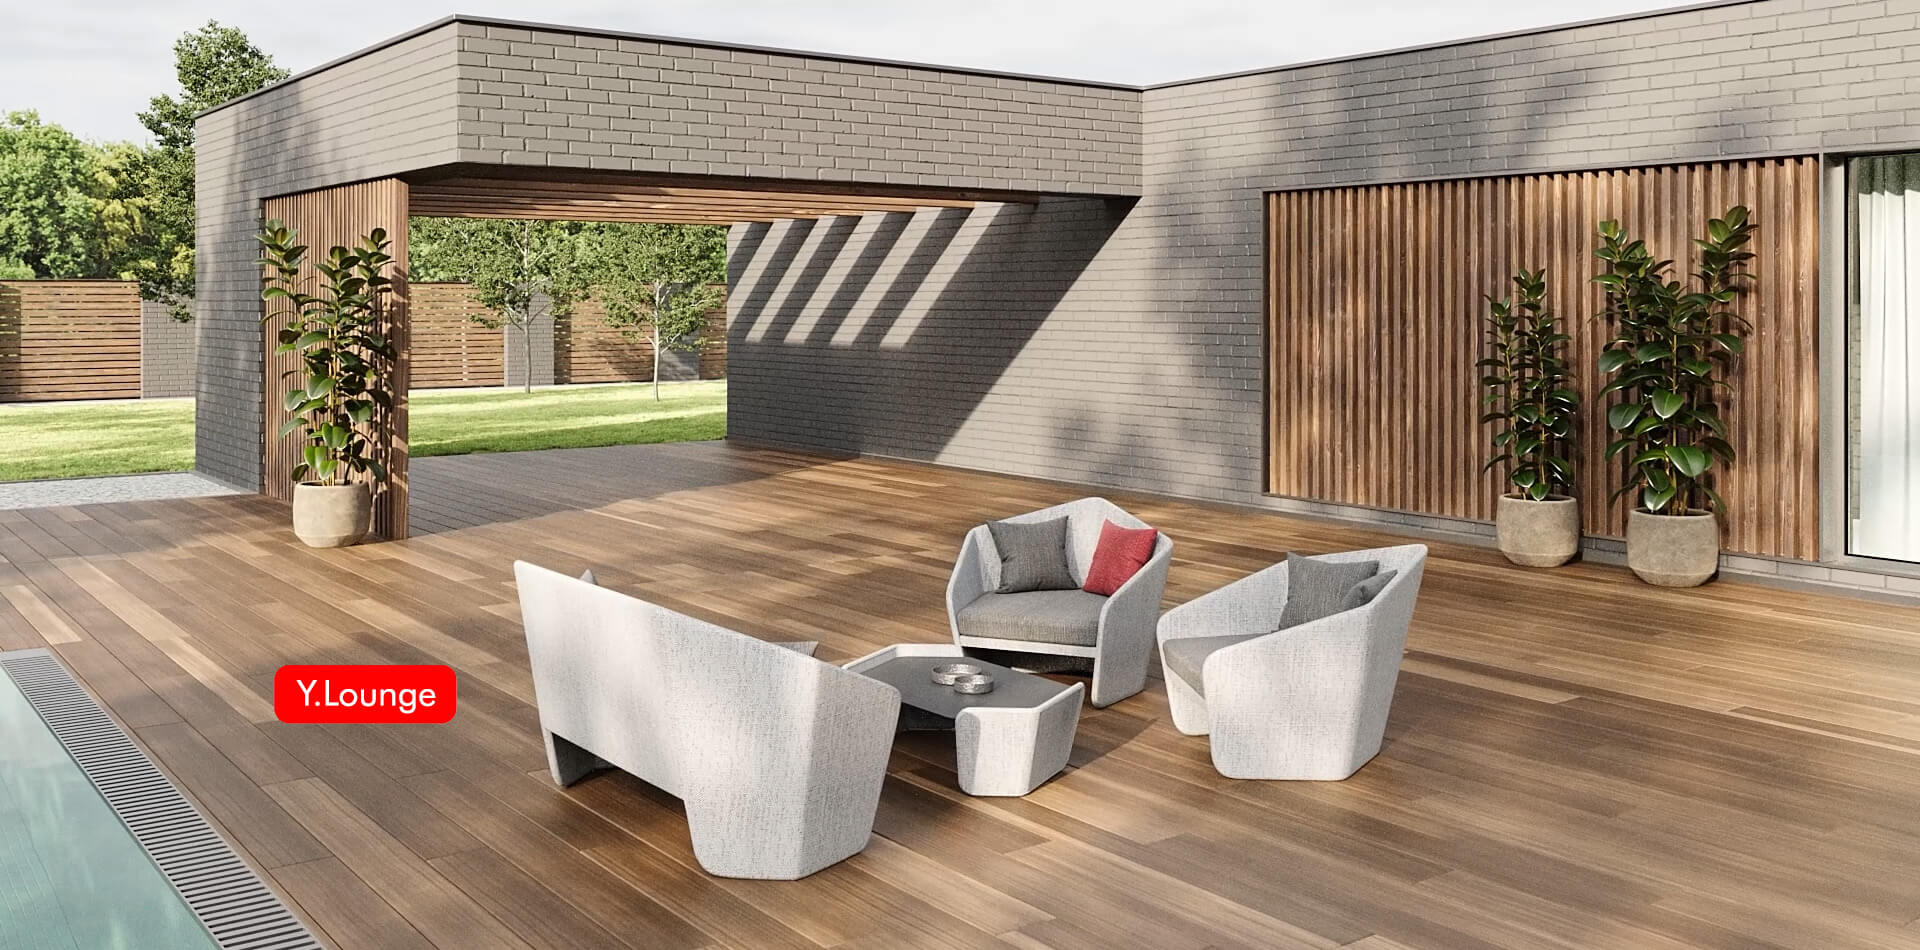 Y.Lounge | Outdoor furniture | Garden furniture | Modern Design